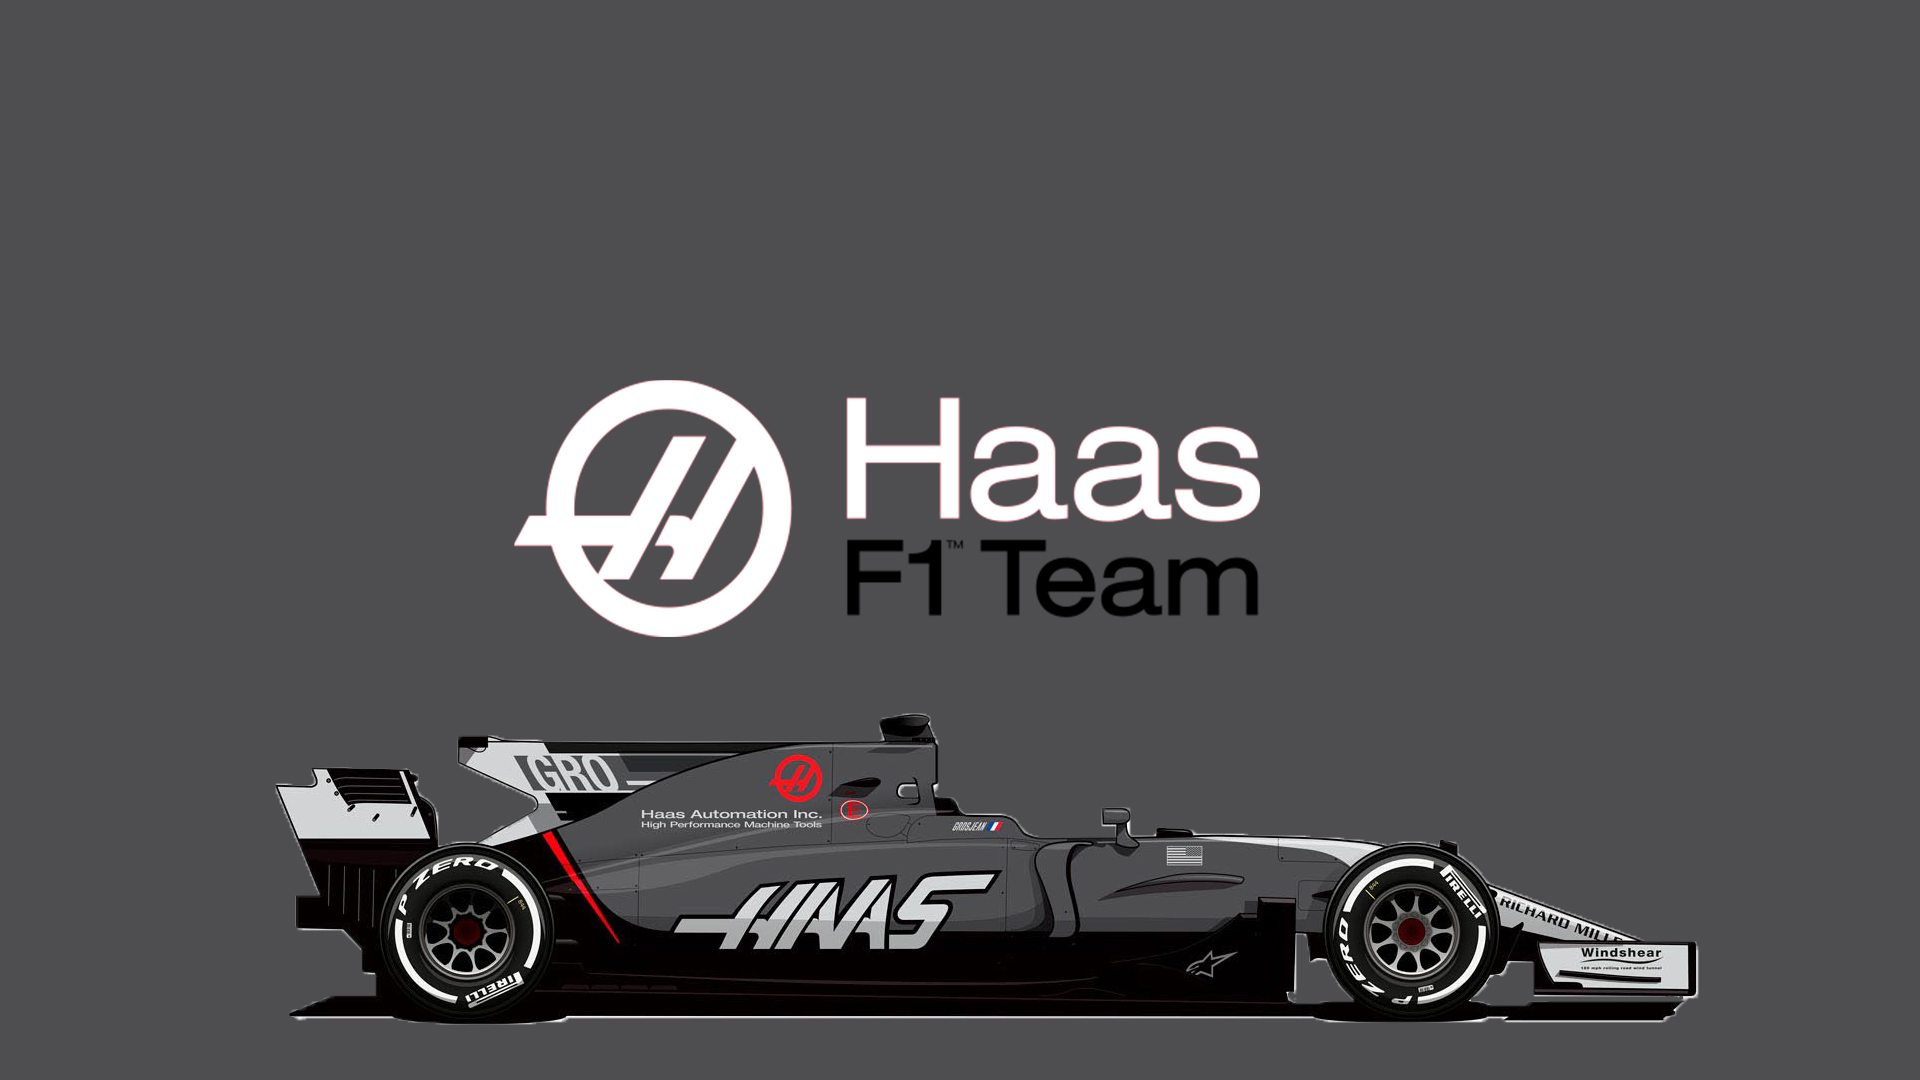 Haas F1 Team Vf Monaco Update Racedepartment